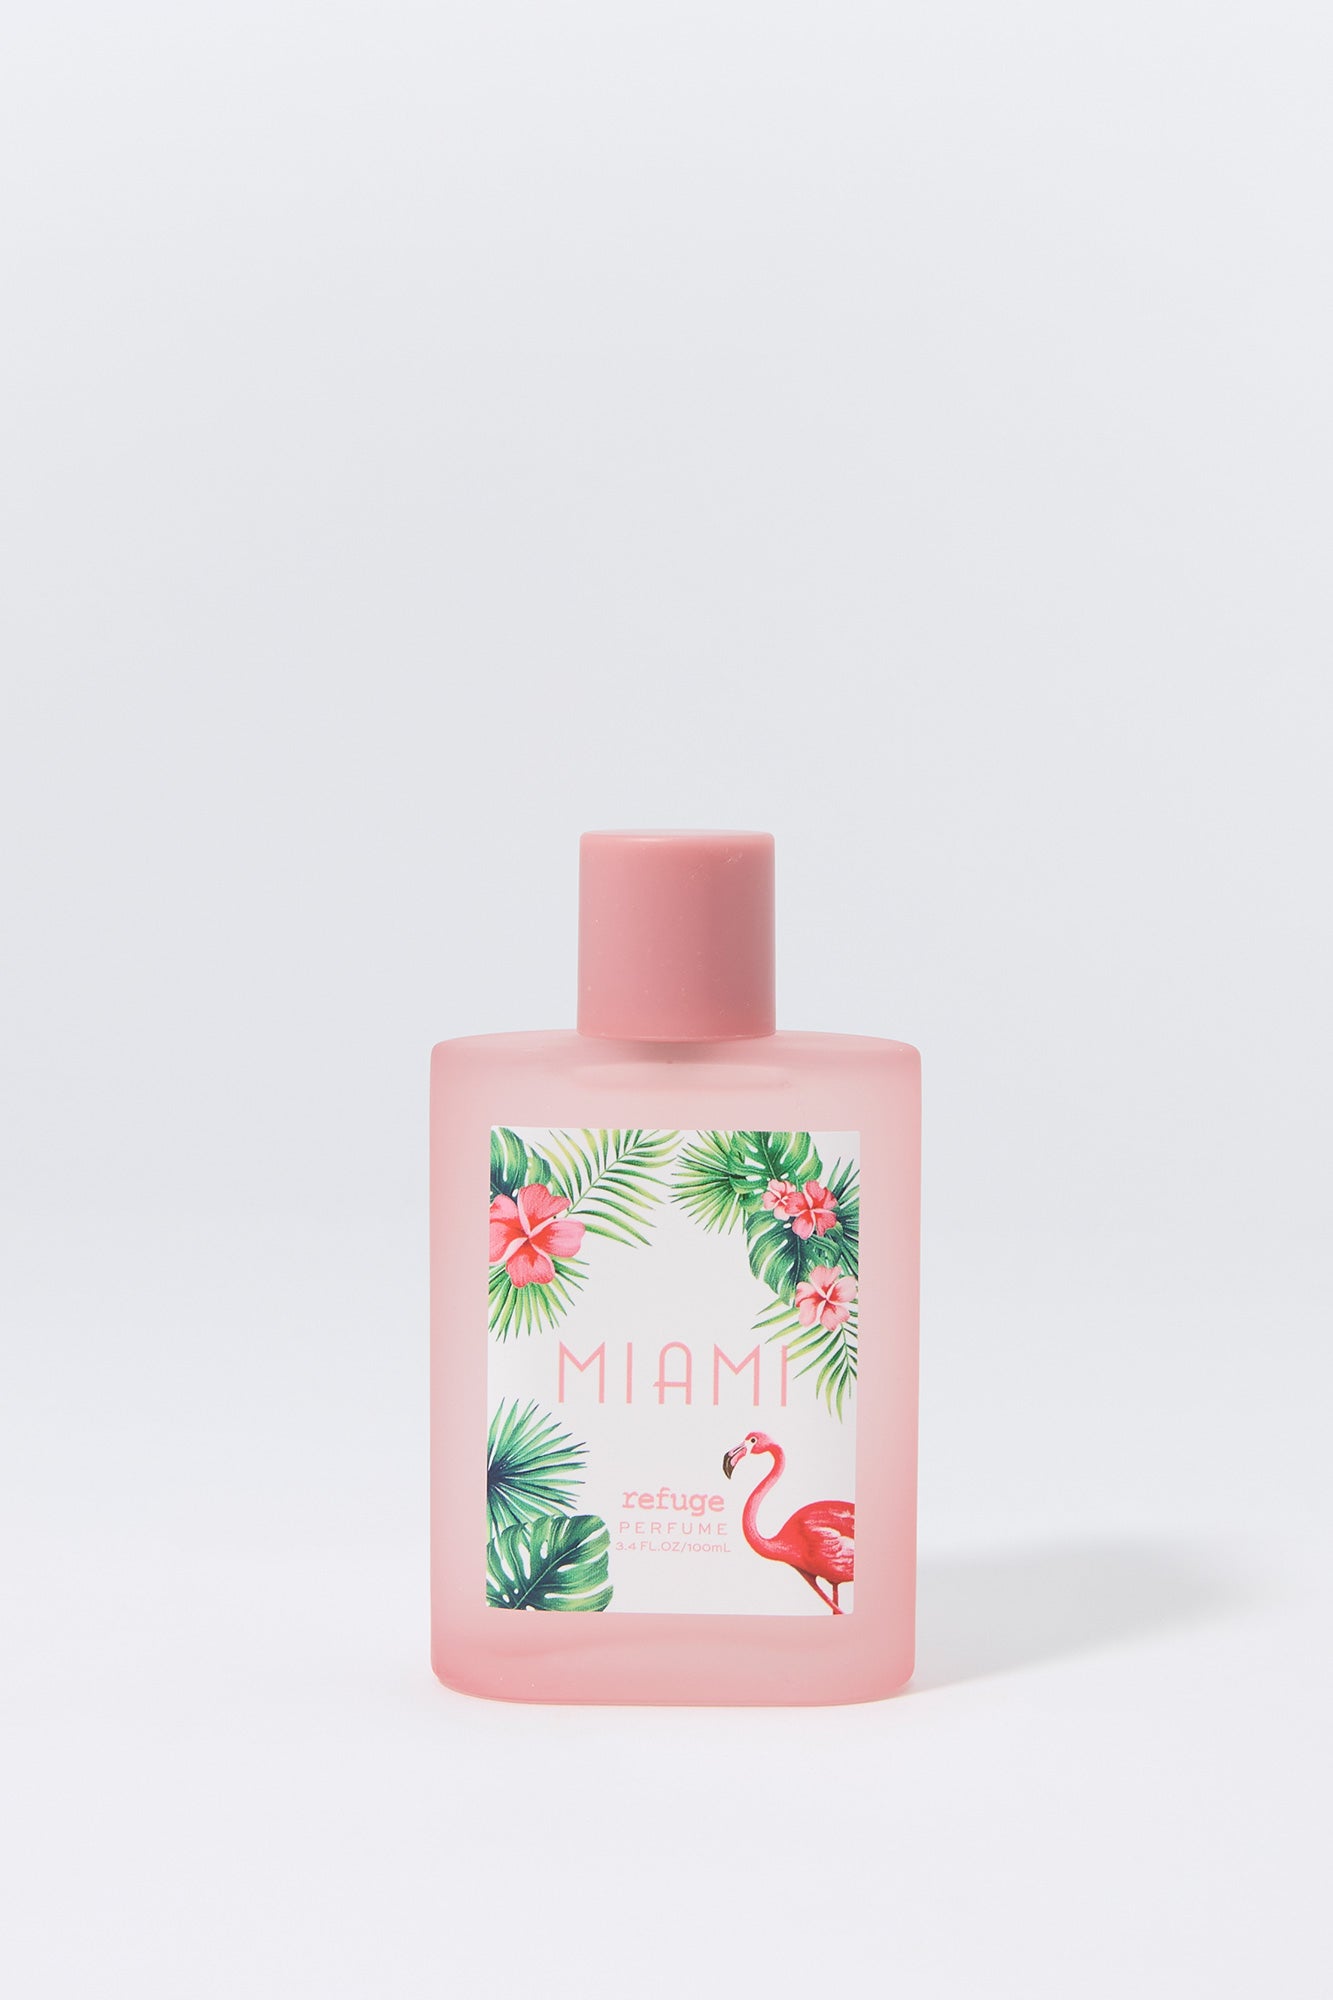 Parfum Miami Refuge 100 ml